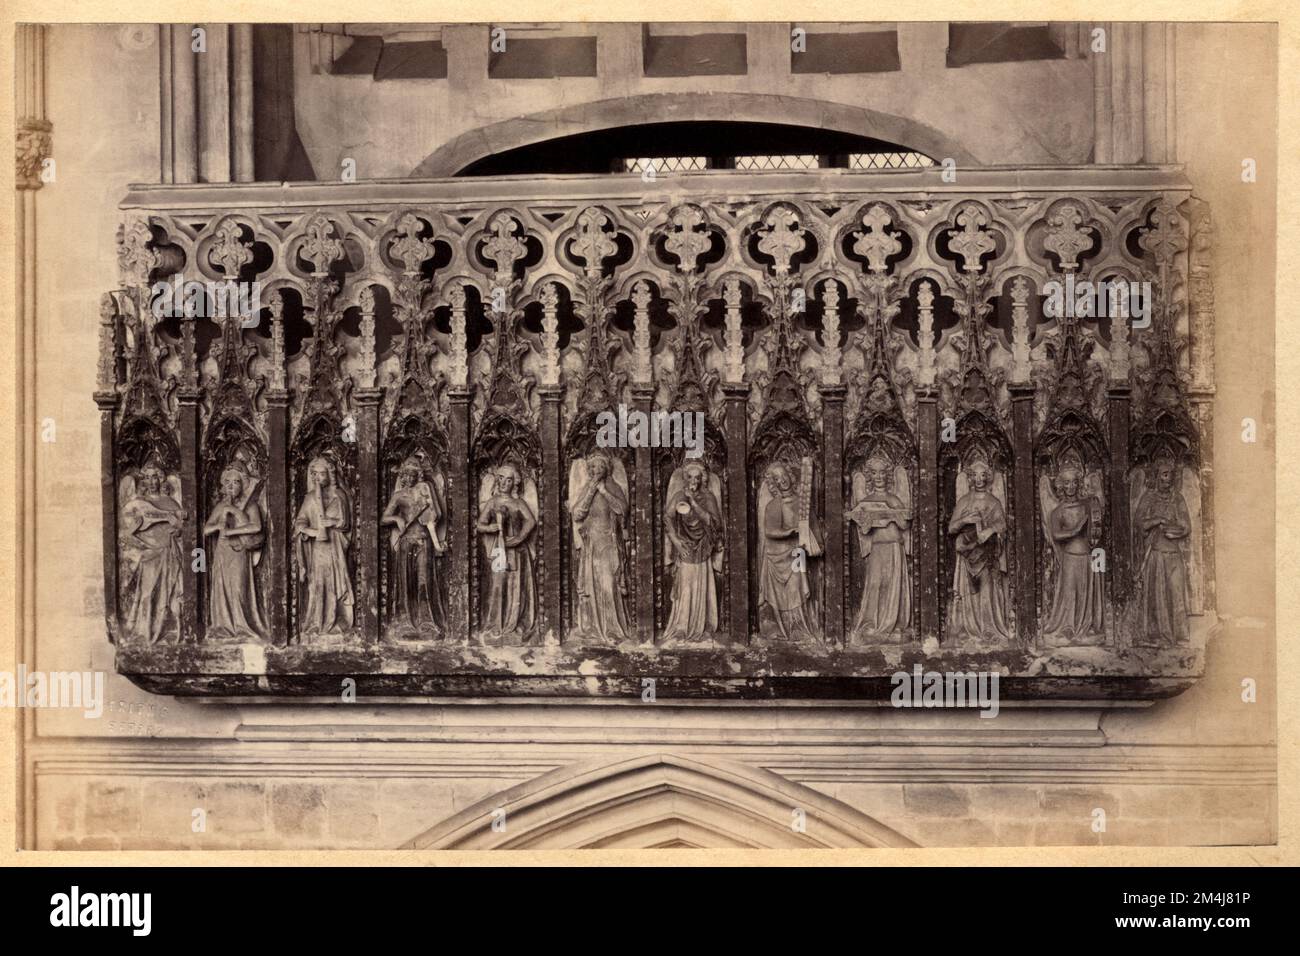 1860 CA , DEVON , ENGLAND , GROSSBRITANNIEN : EXETER . Die 1050 gegründete KATHEDRALE , die Minstrels' Gallery ( 1360 ) , ist mit zwölf geschnitzten Engeln geschmückt, von denen zwölf mittelalterliche Musikinstrumente spielen . Foto von Francis Friths ( 1822 - 1898 ) . - GRAND BRETAGNA - AUSSICHT - FOTOSTORICHE - GESCHICHTE - GEOGRAFIEN - GEOGRAFIE - ARCHITETTURA - ARCHITEKTUR - STILE GOTICO - GOTISCHER STIL - CATTEDRALE - KIRCHE - CHIESA - OTTOCENTO - 800 - '800 - RELIGION - RELIGION - KUNST - ARTE - SKULPTUR - ANGELI musicanti... Archivio GBB Stockfoto